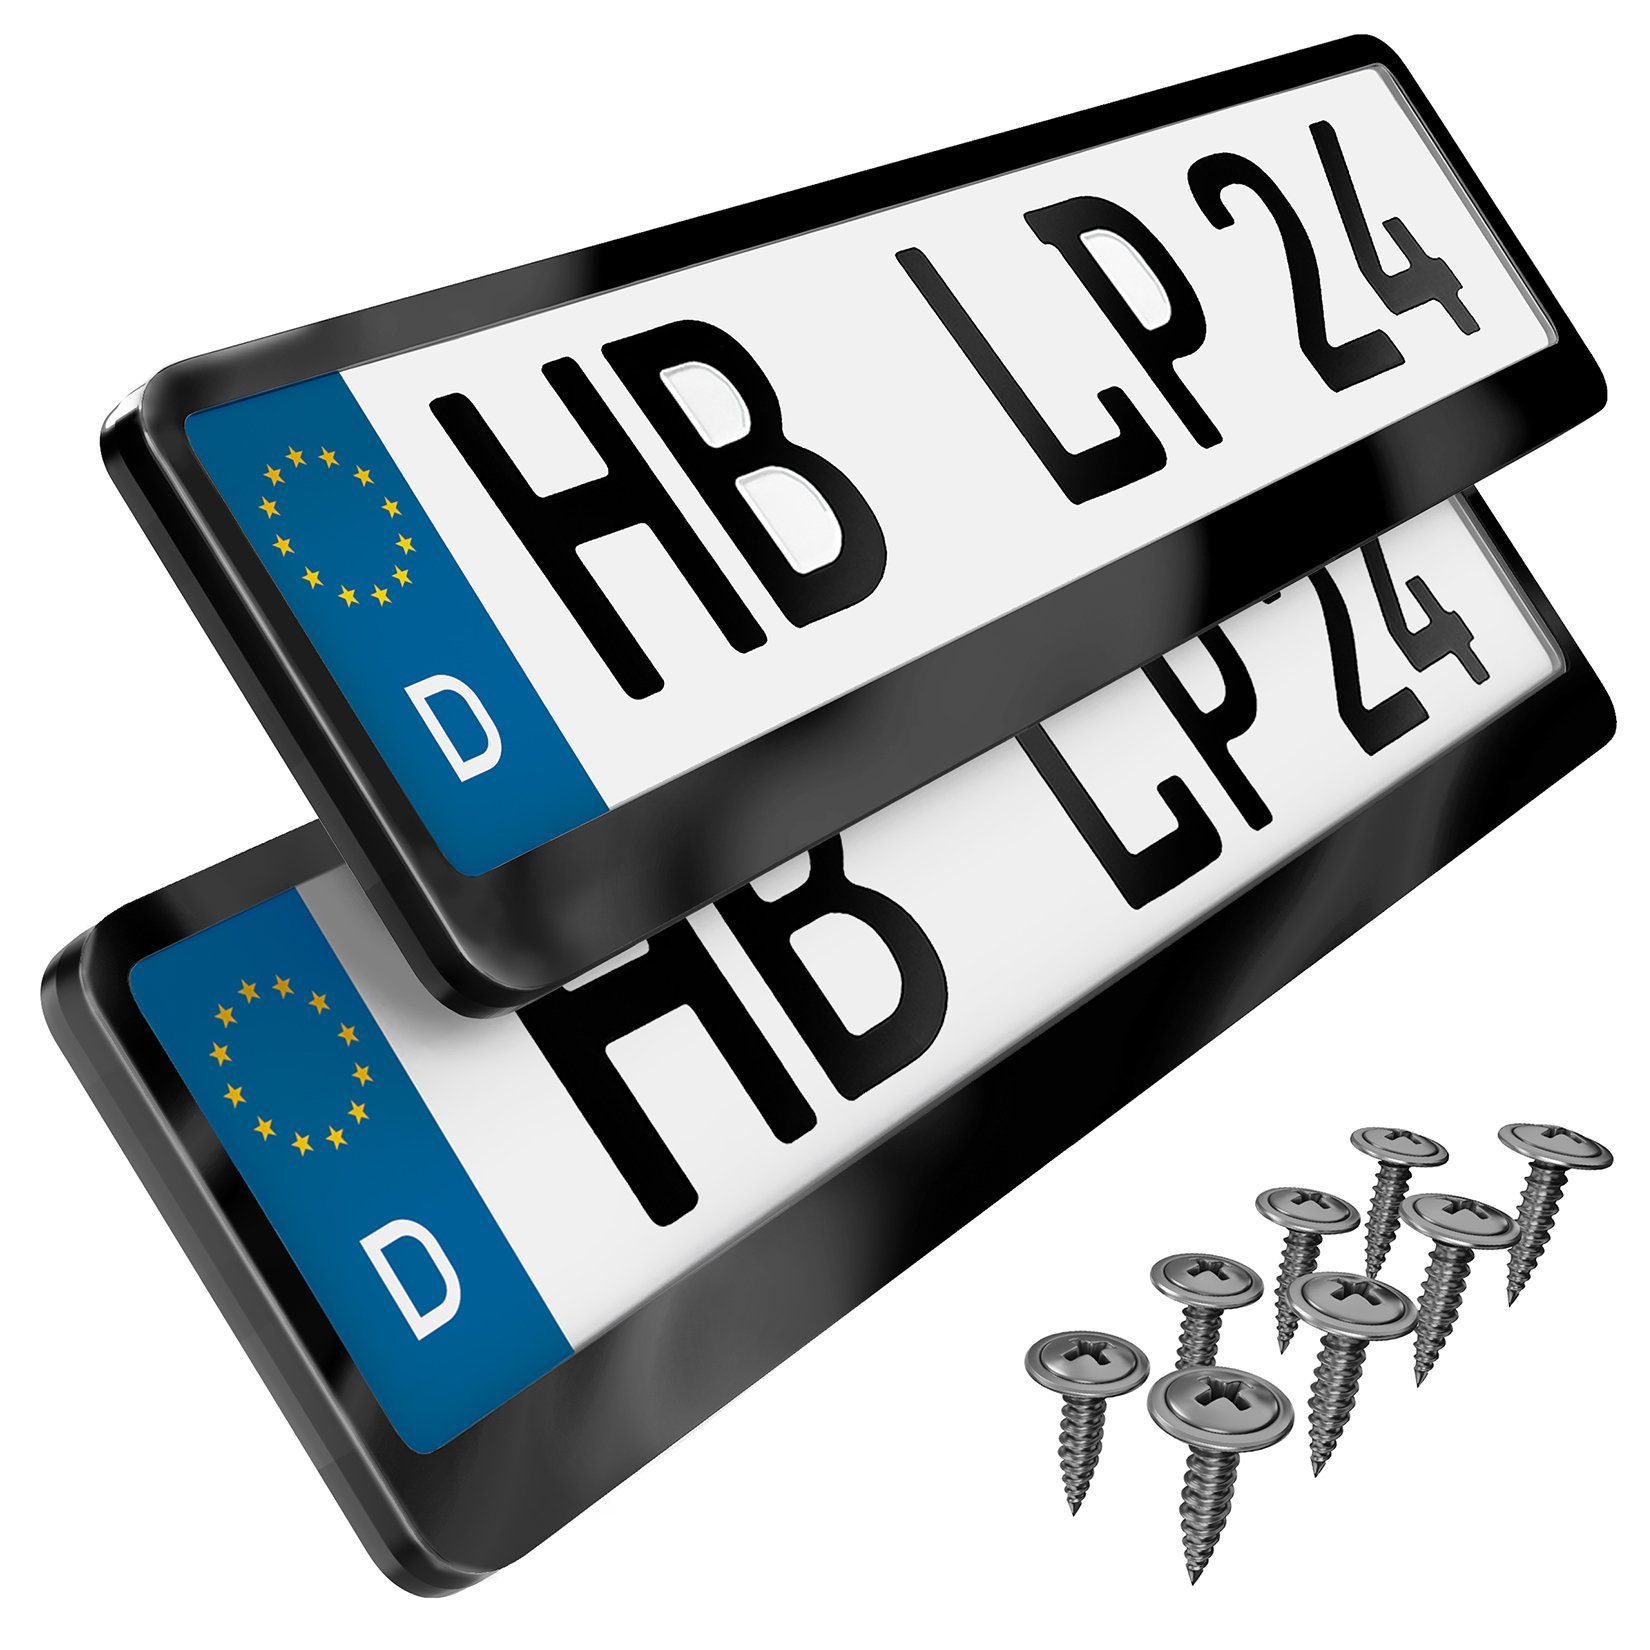 L & P Car Design Kennzeichenhalter Auto Edelstahl schwarz hochglanz poliert Kennzeichenhalter V2A, (2 Stück)